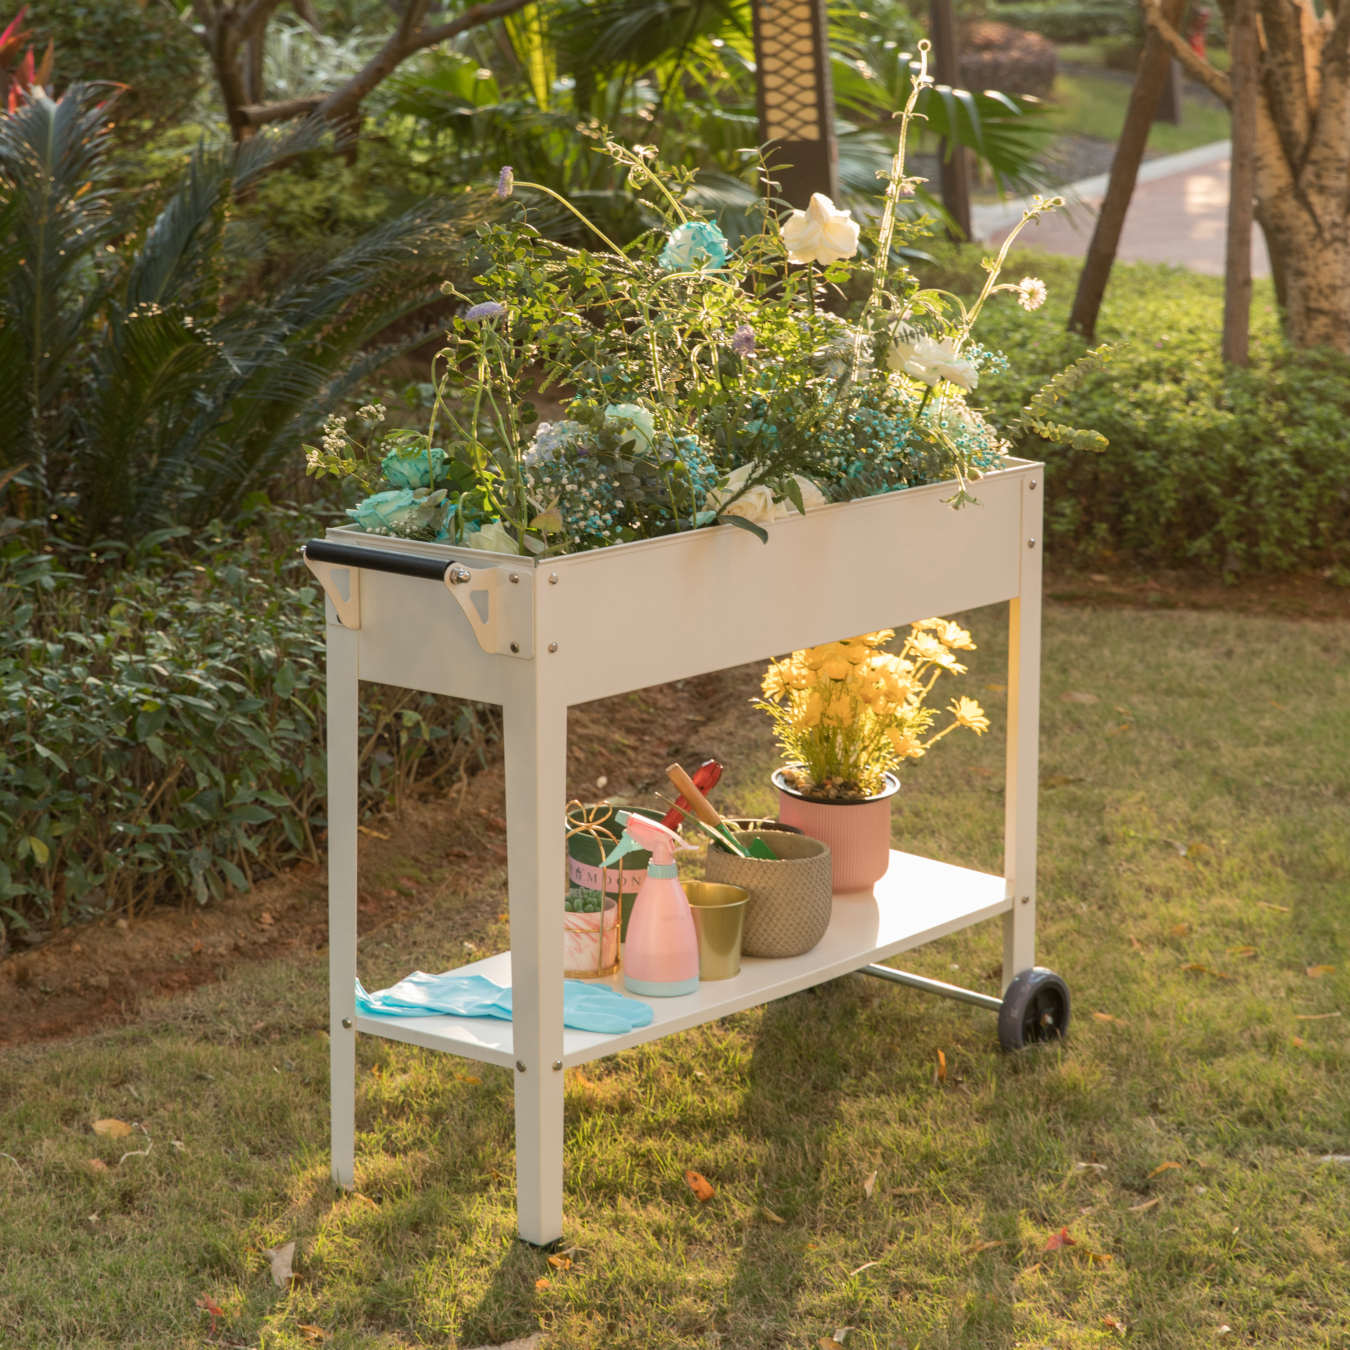 Mobile Planter Raised Garden Bed Rectangular Flower Cart with Shelf